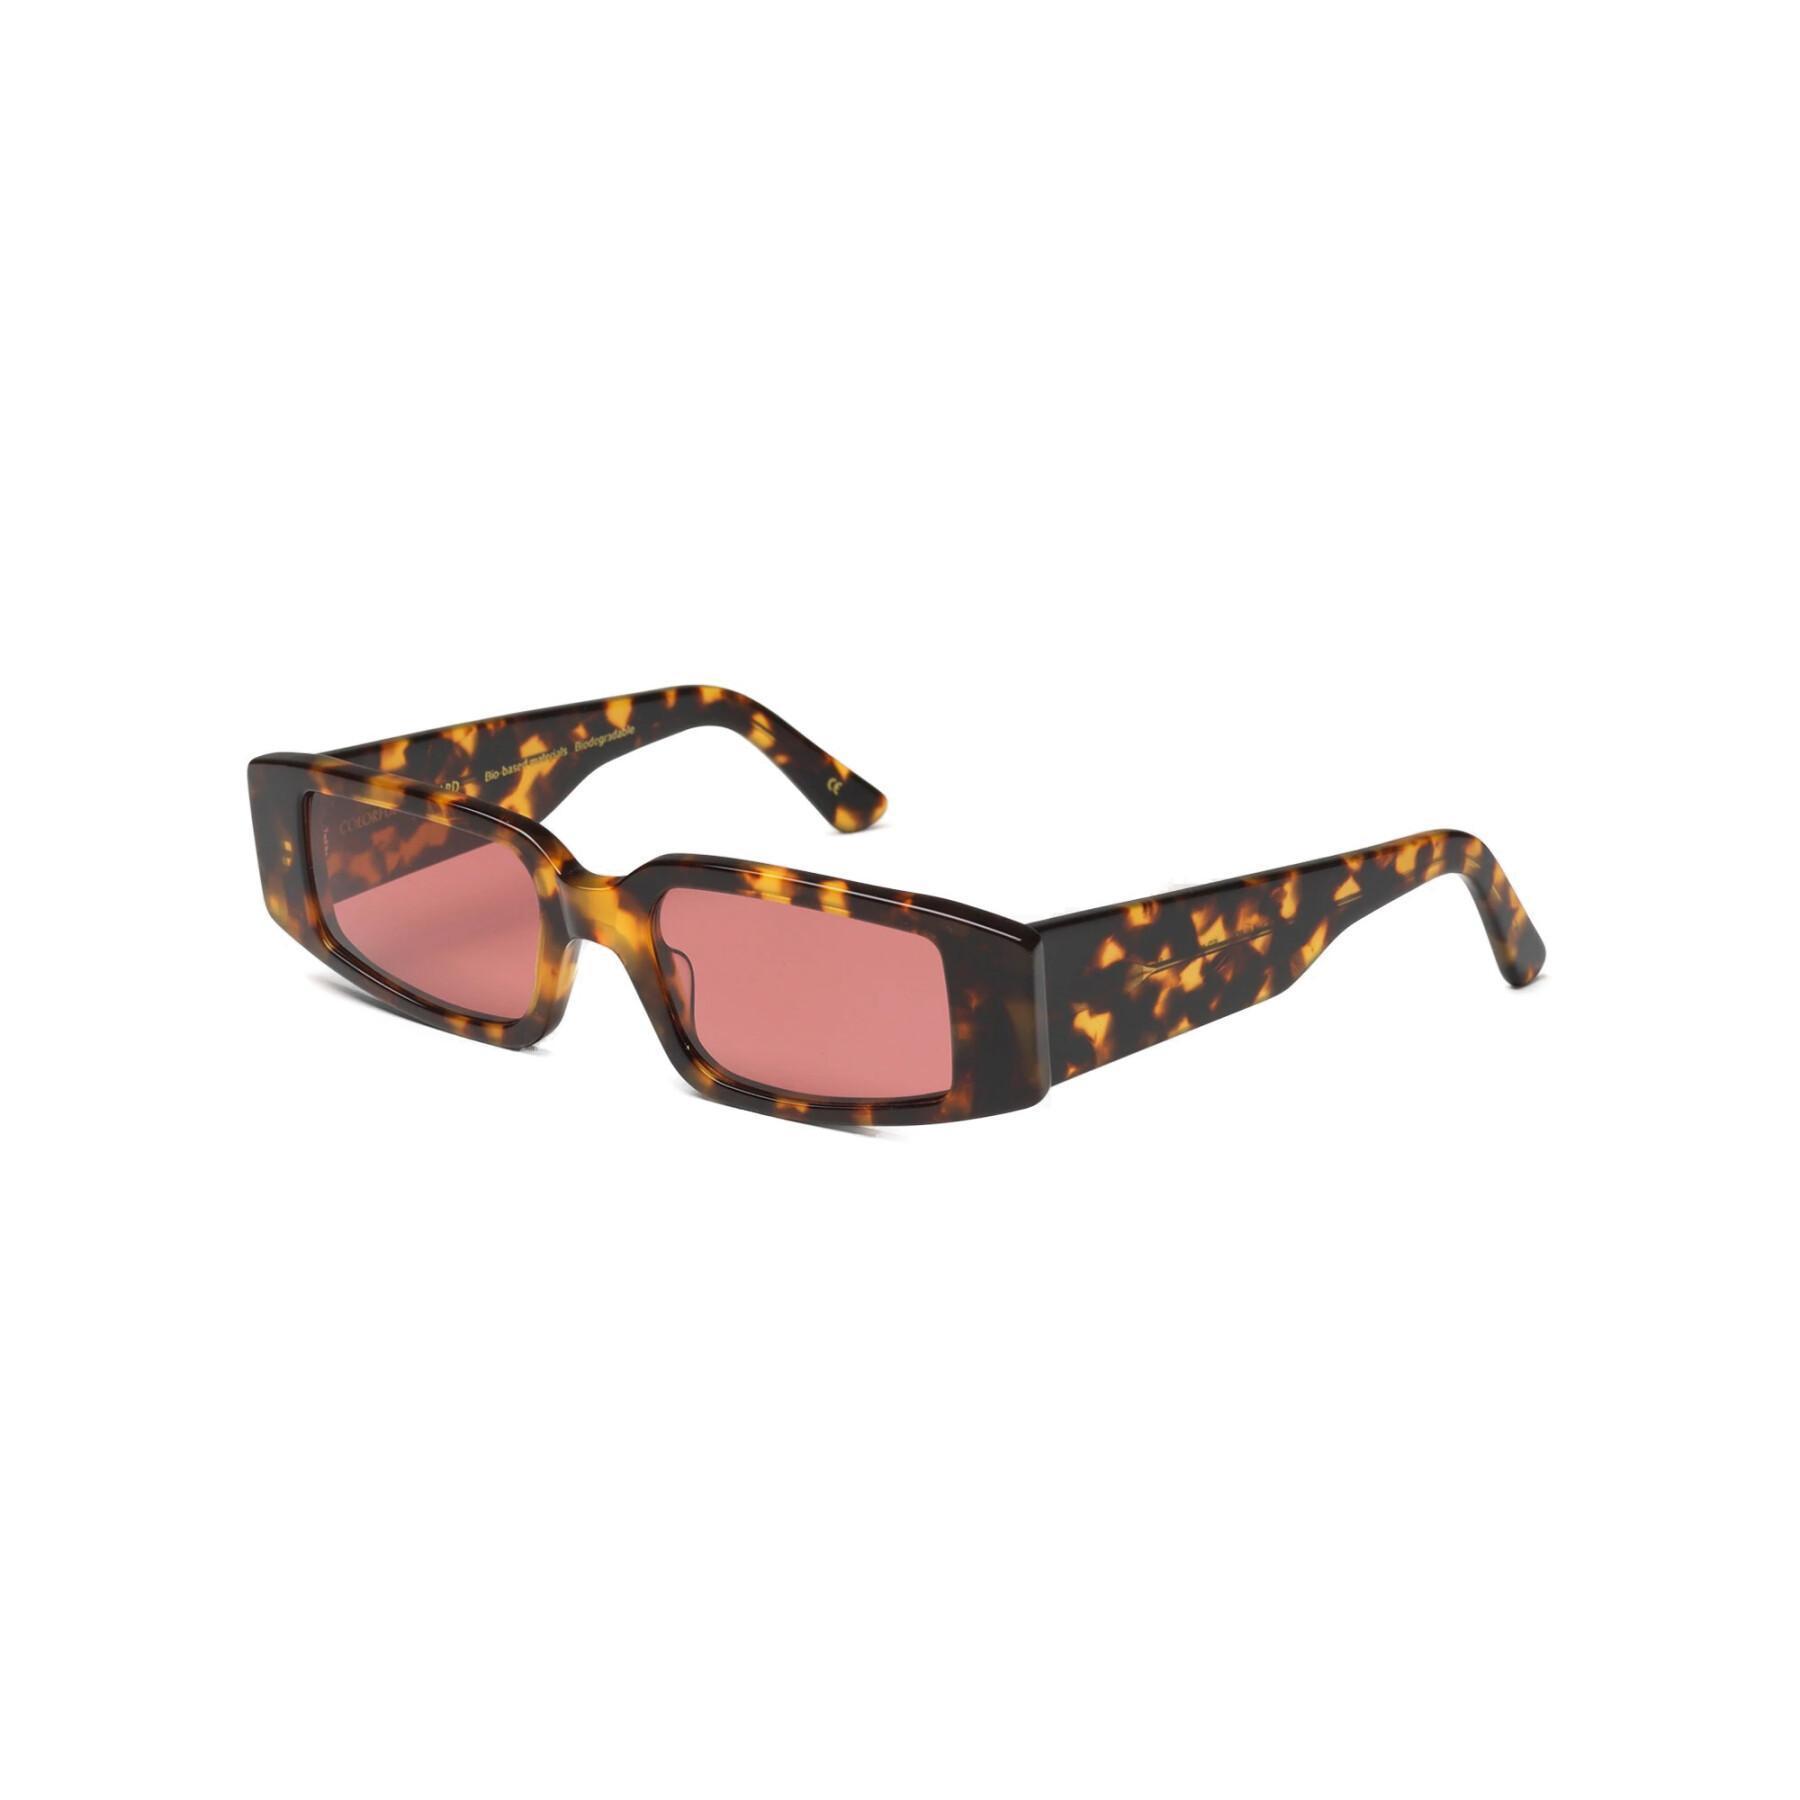 Okulary przeciwsłoneczne Colorful Standard 05 classic havana/dark pink